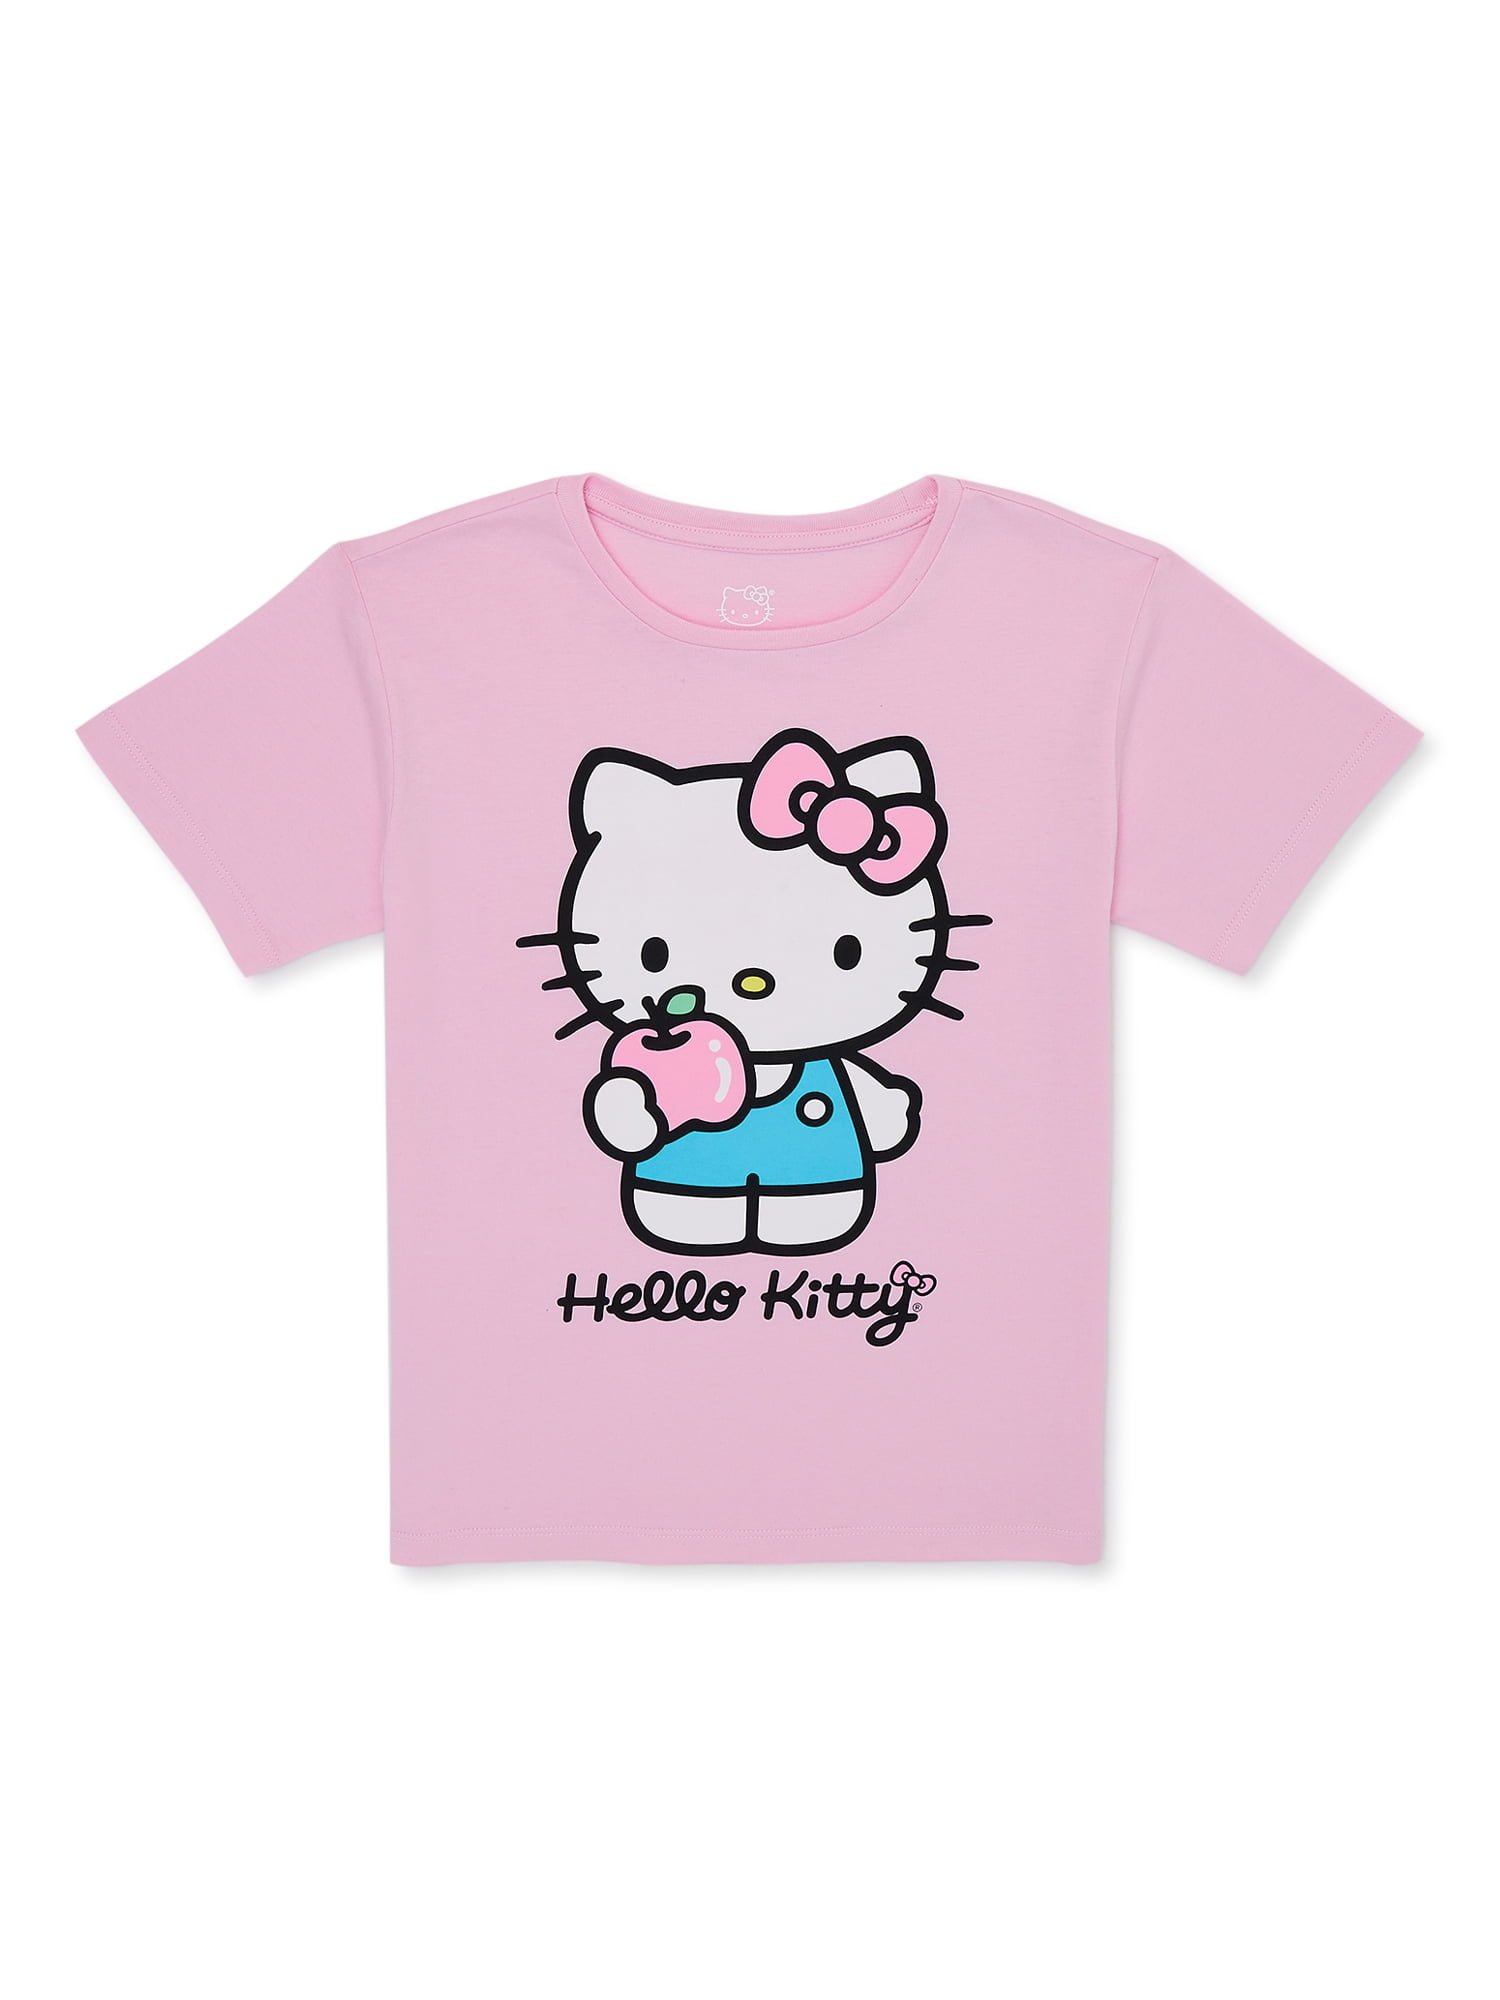 Sanrio Girls Hello Kitty Graphic T-Shirt, Sizes 4-18 